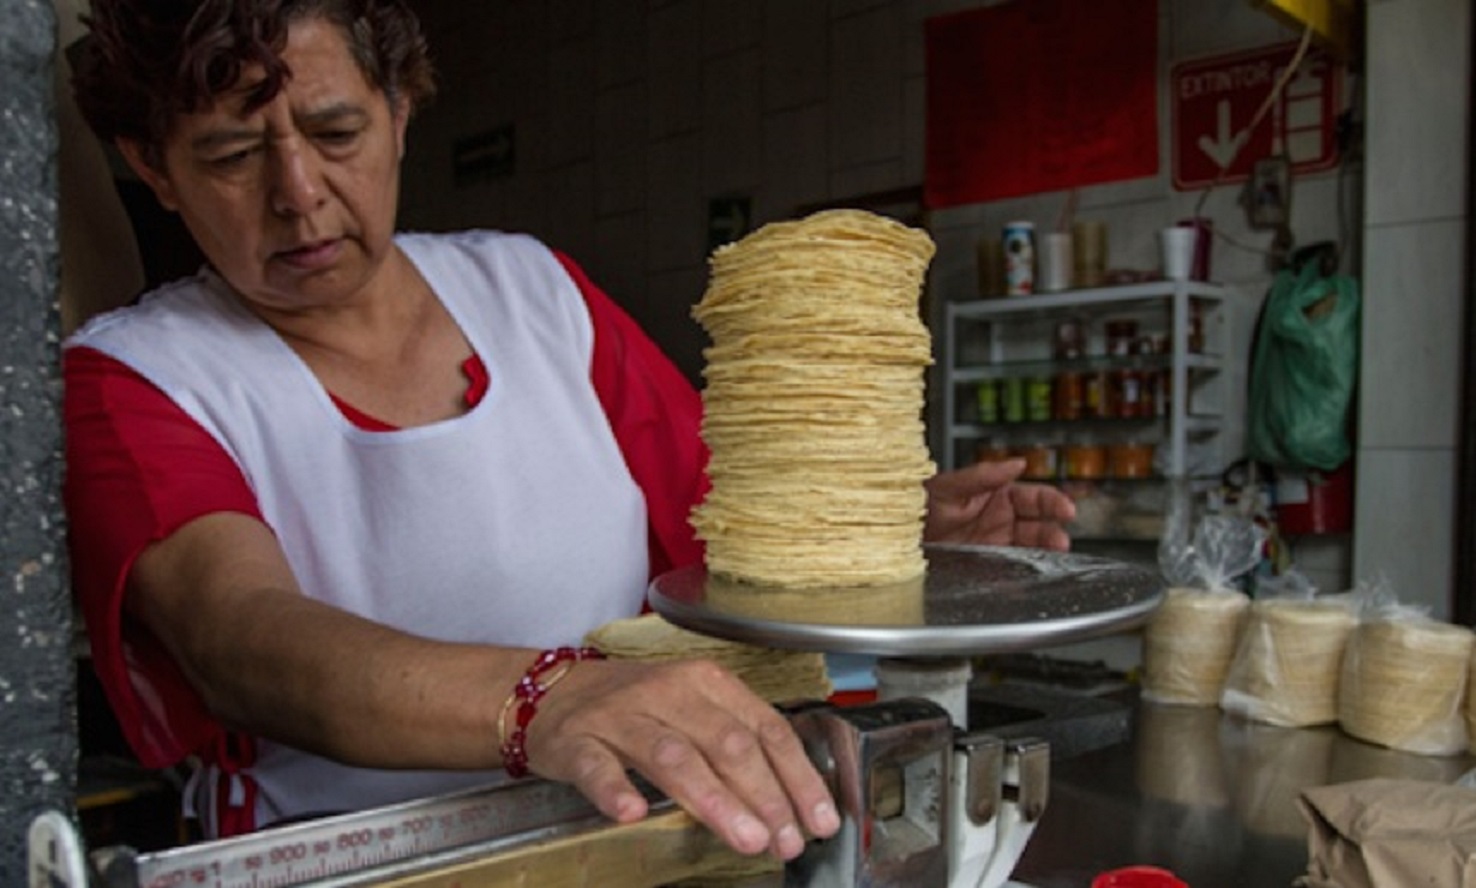 Sube 4 pesos el precio de la tortilla en Acatlán de Osorio tras gasolinazo